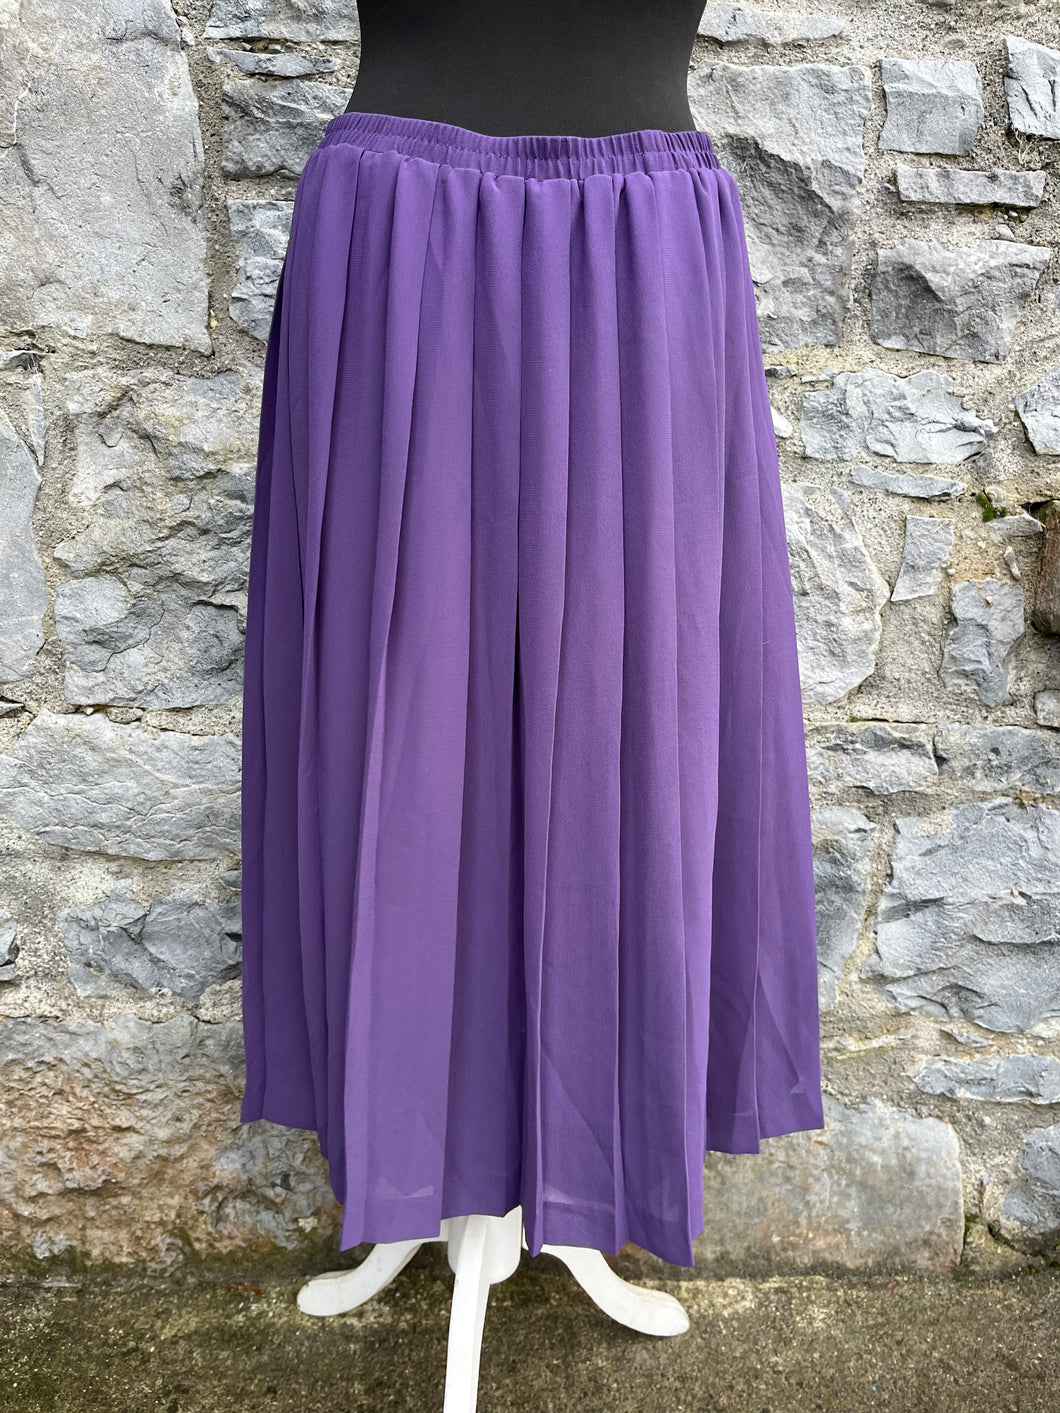 90s purple pleated skirt uk 12-14